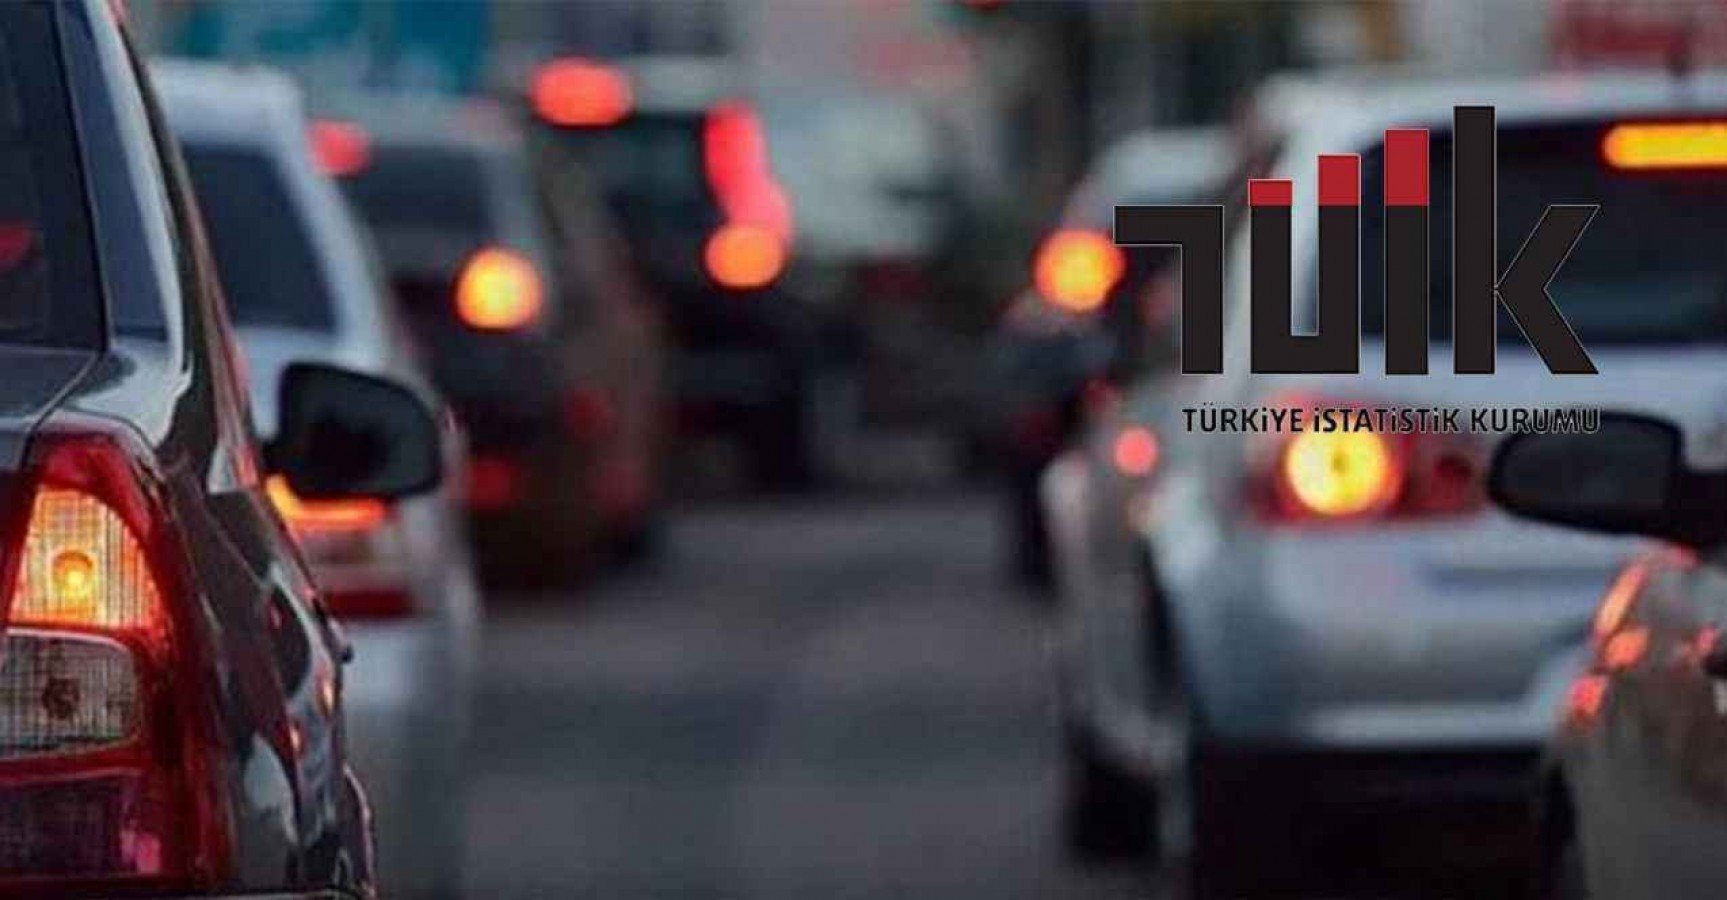 Urfa'da trafiğe kayıtlı araç sayısı belli oldu;